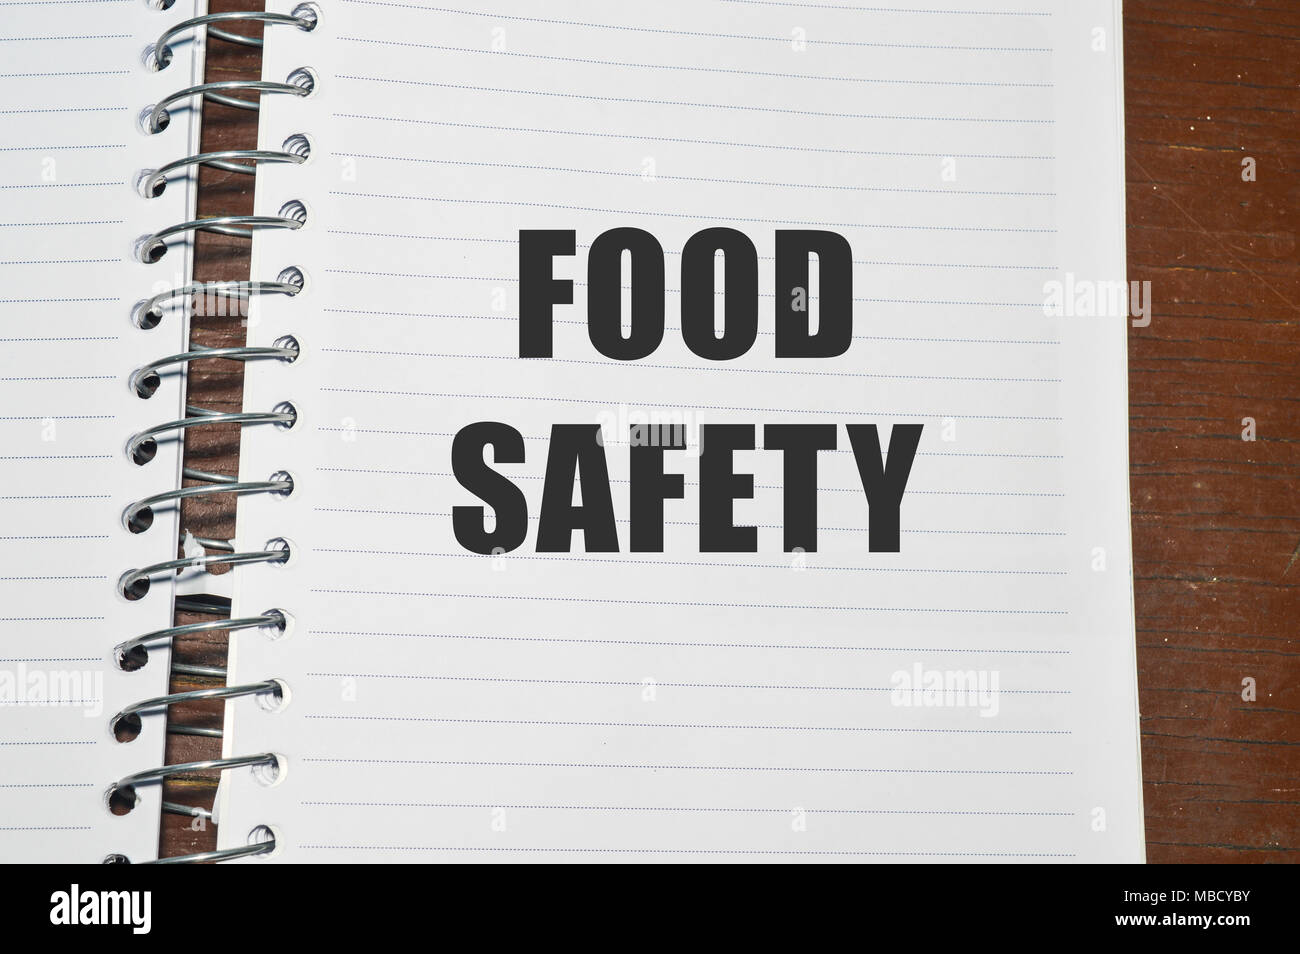 Uno Degli Obiettivi Del Libro Bianco Sulla Sicurezza Alimentare È